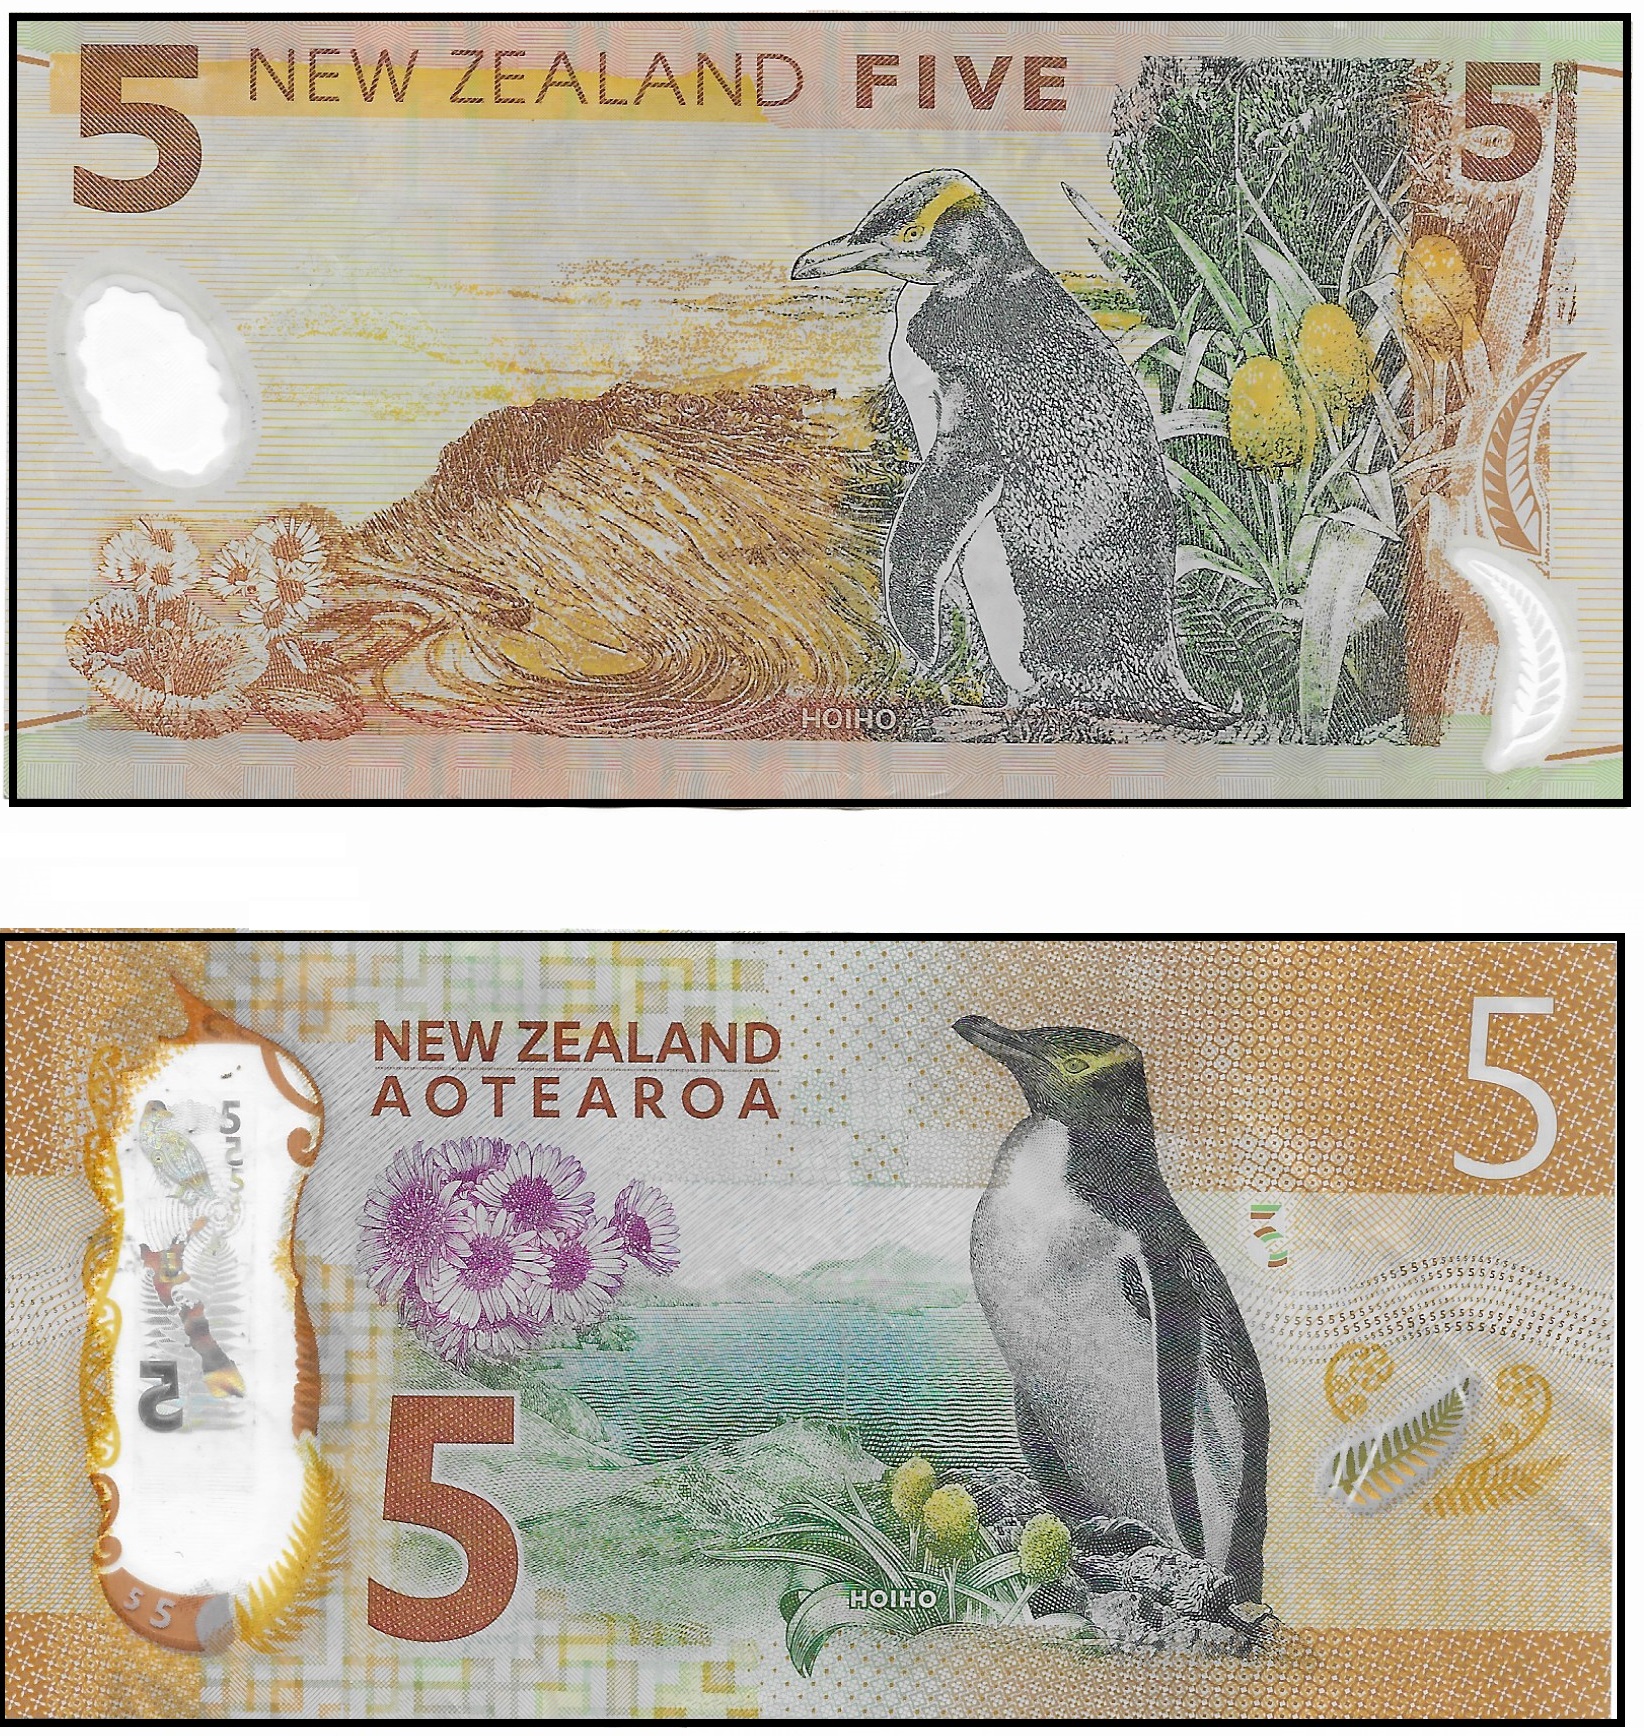 NZ 5 reverse.jpg